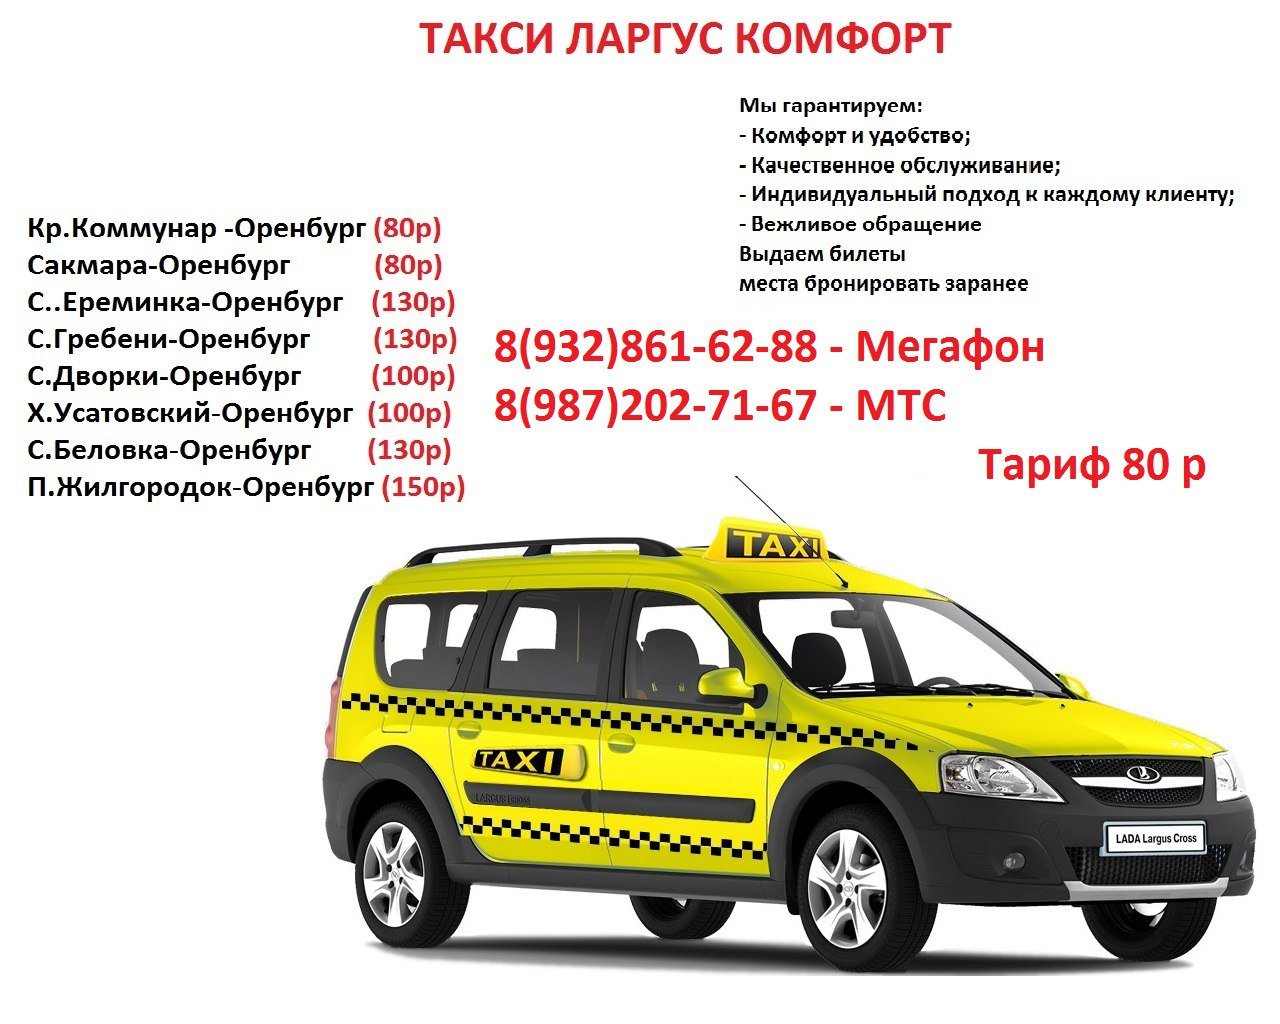 Дешевое такси в оренбурге. Такси Ларгус Сакмара Оренбург. Такси Ларгус Оренбург. Ларгус такси. Оренбург Уфа такси Ларгус.